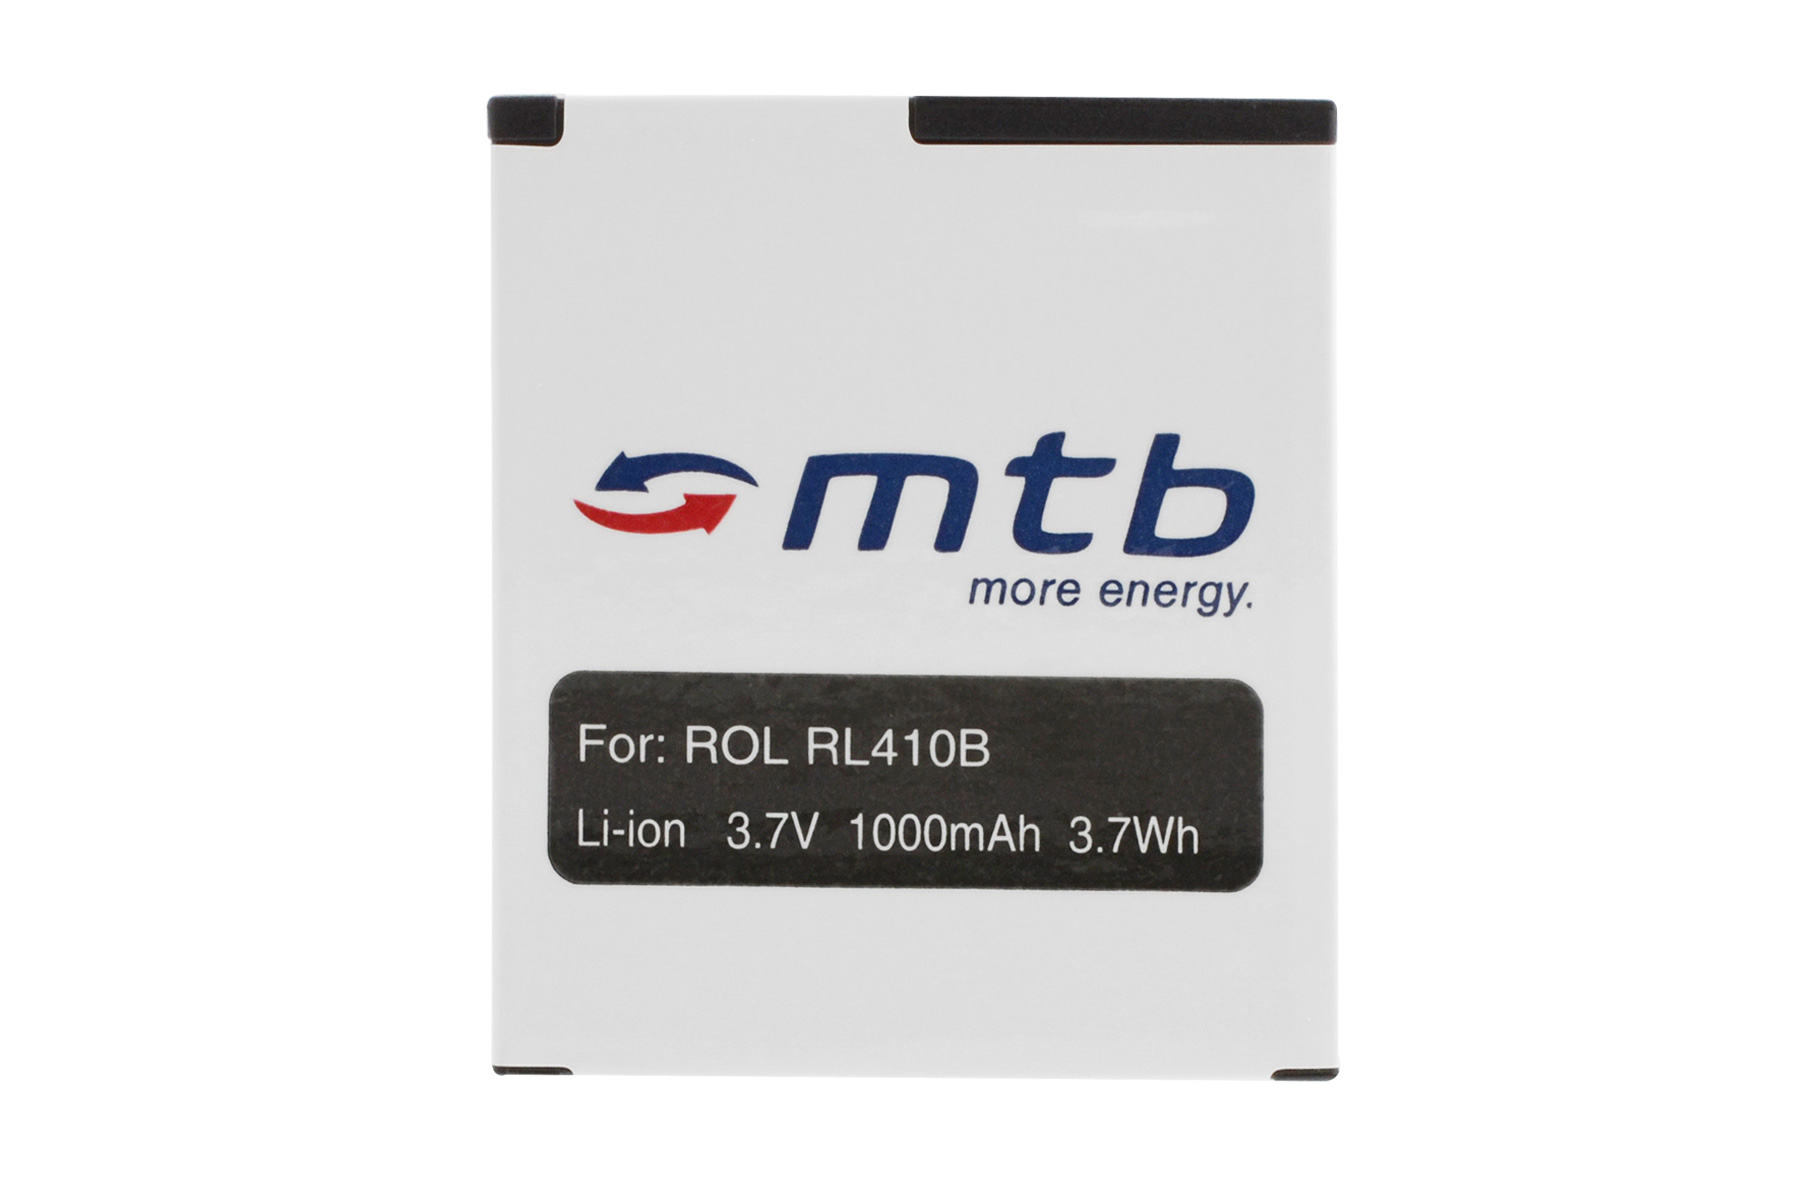 MTB MORE ENERGY 2x BAT-452 mAh Akku, Li-Ion, RL410B 1000